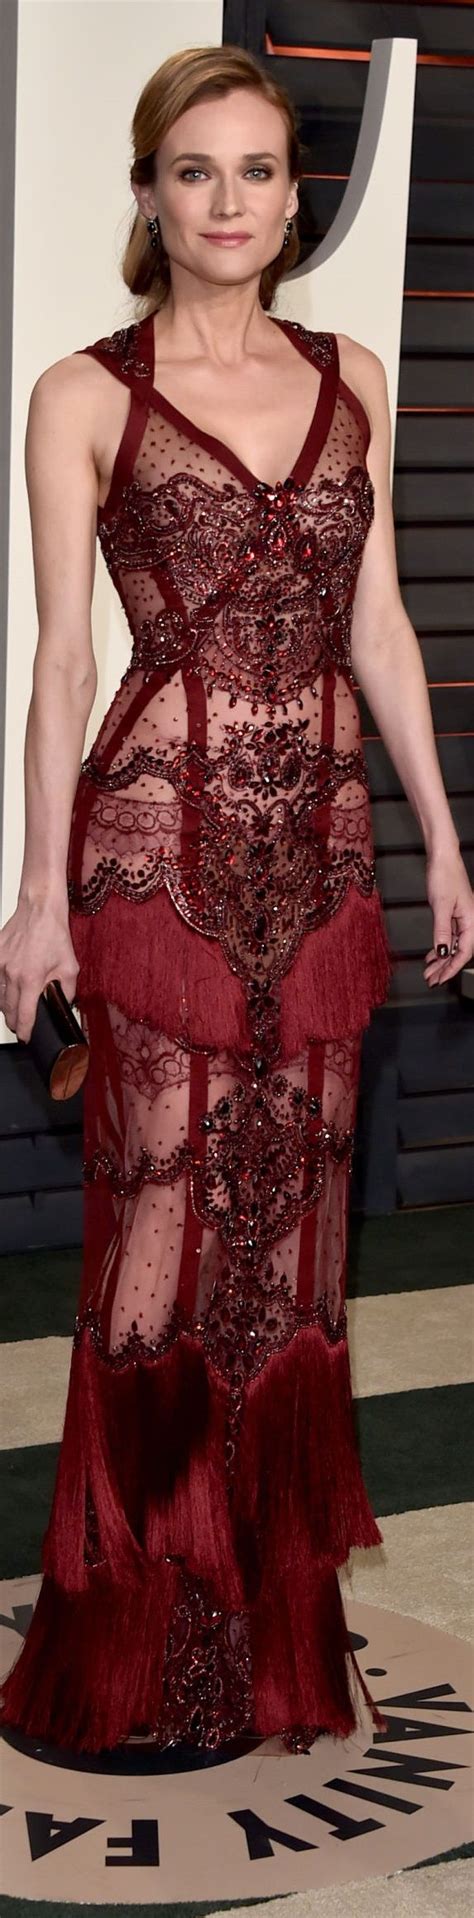 Diane Kruger Veste Reem Acra Oscar Party 2016 Fashion Gowns Pretty Dresses Diane Kruger